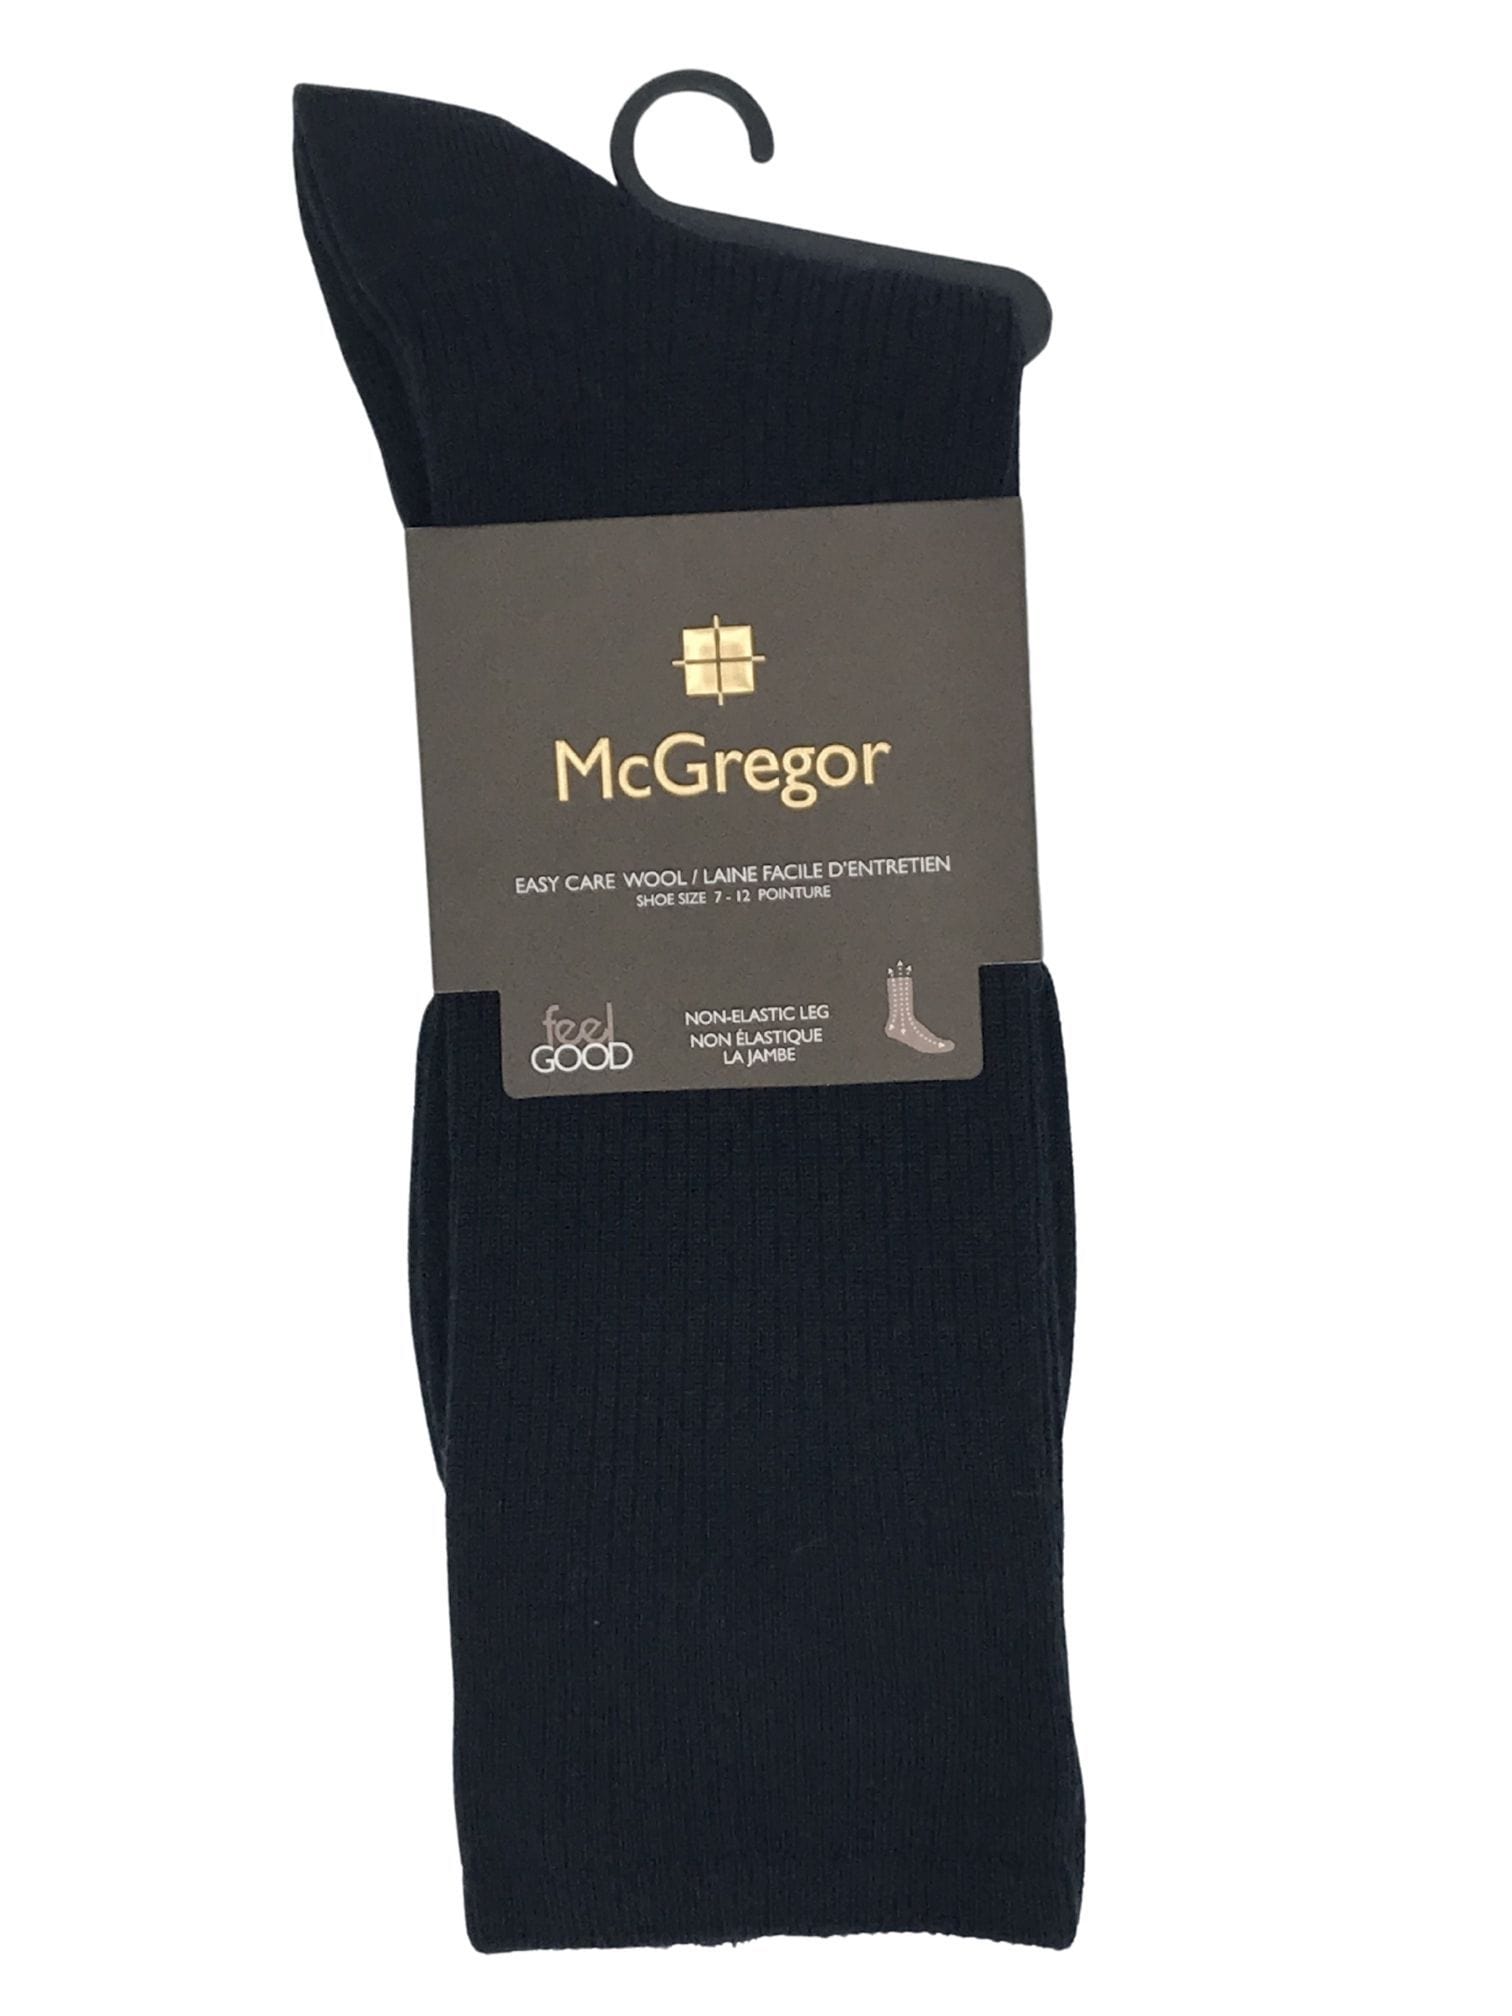 McGregor 'Feel Good' Wool Non-Elastic Socks - 1503 - Navy 003